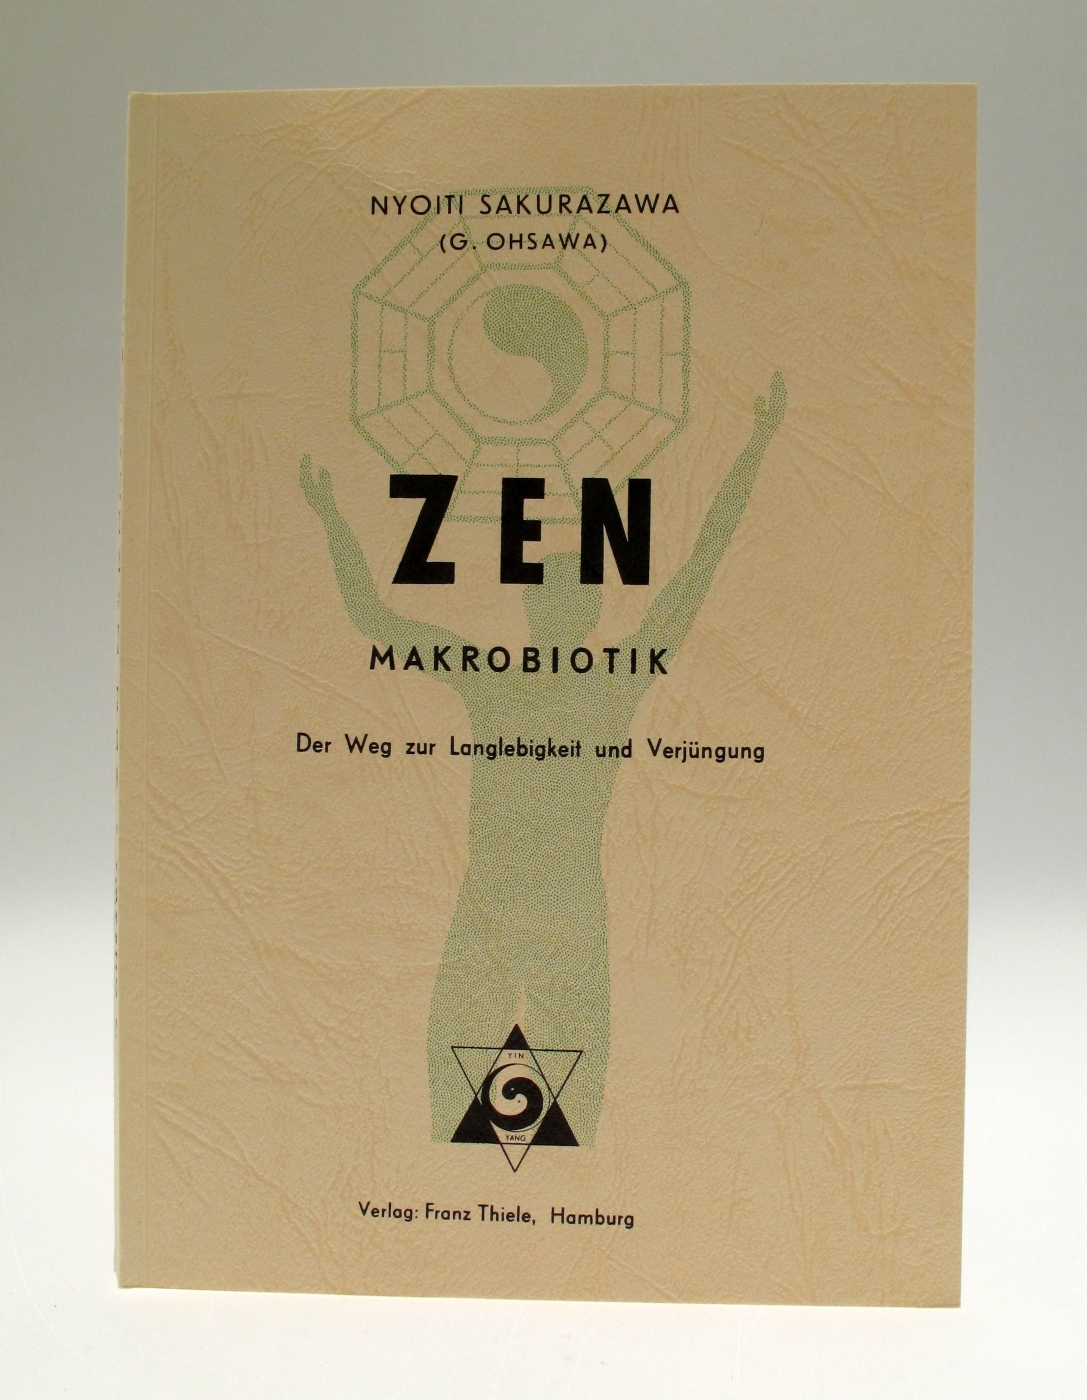 Zen Makrobiotik